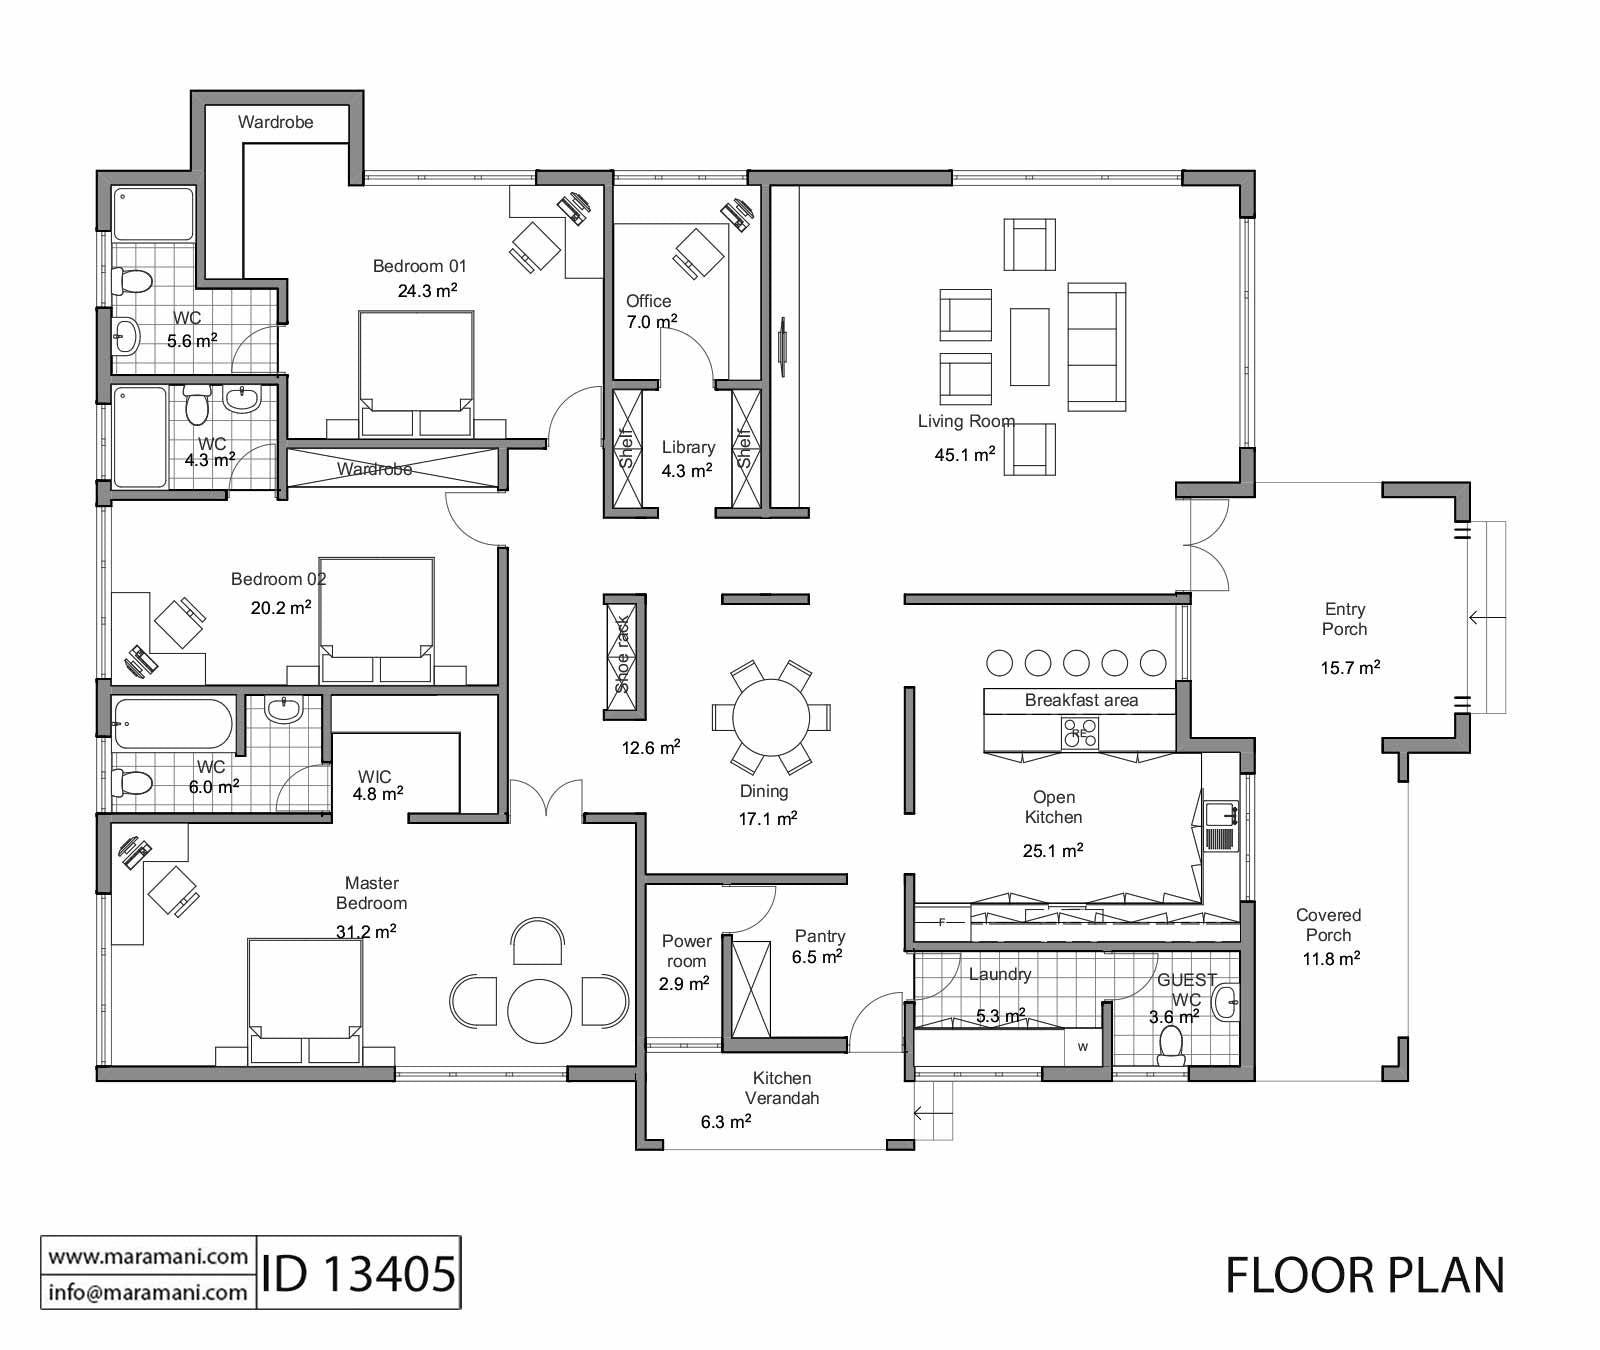 3 Bedrooms Floor Plan - ID 13405